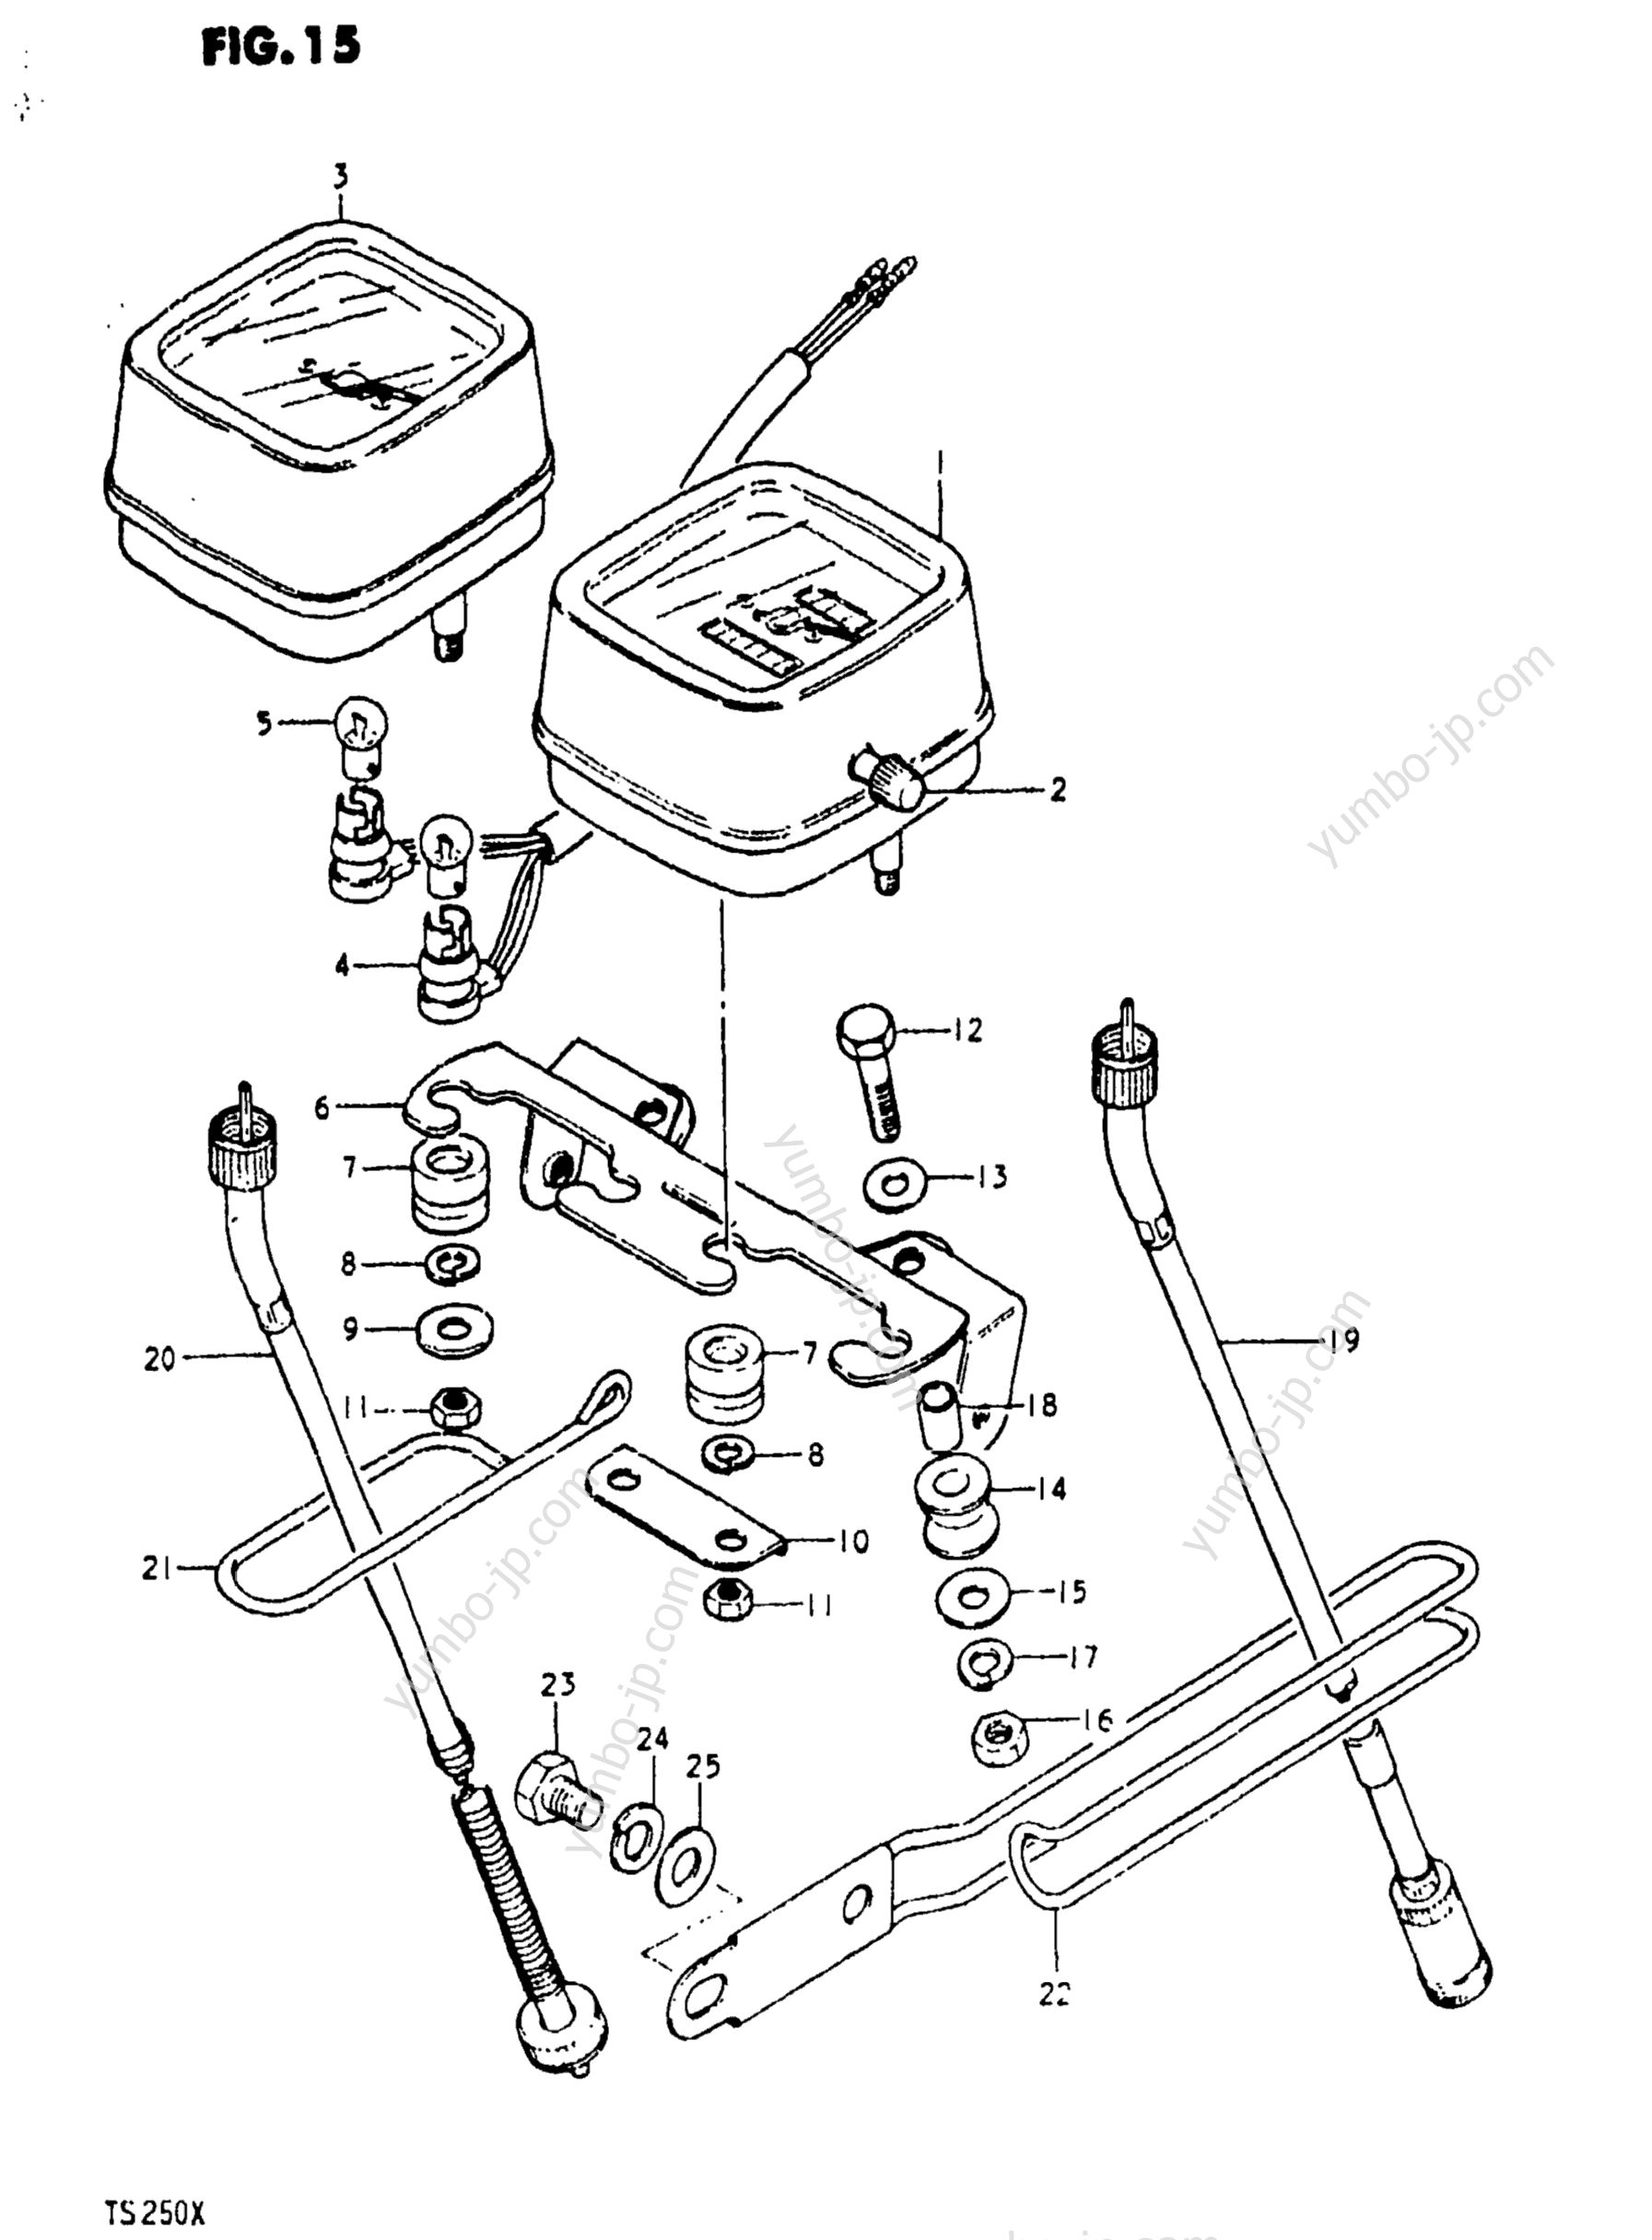 Speedometer - Tachometer for motorcycles SUZUKI TS250 1980 year